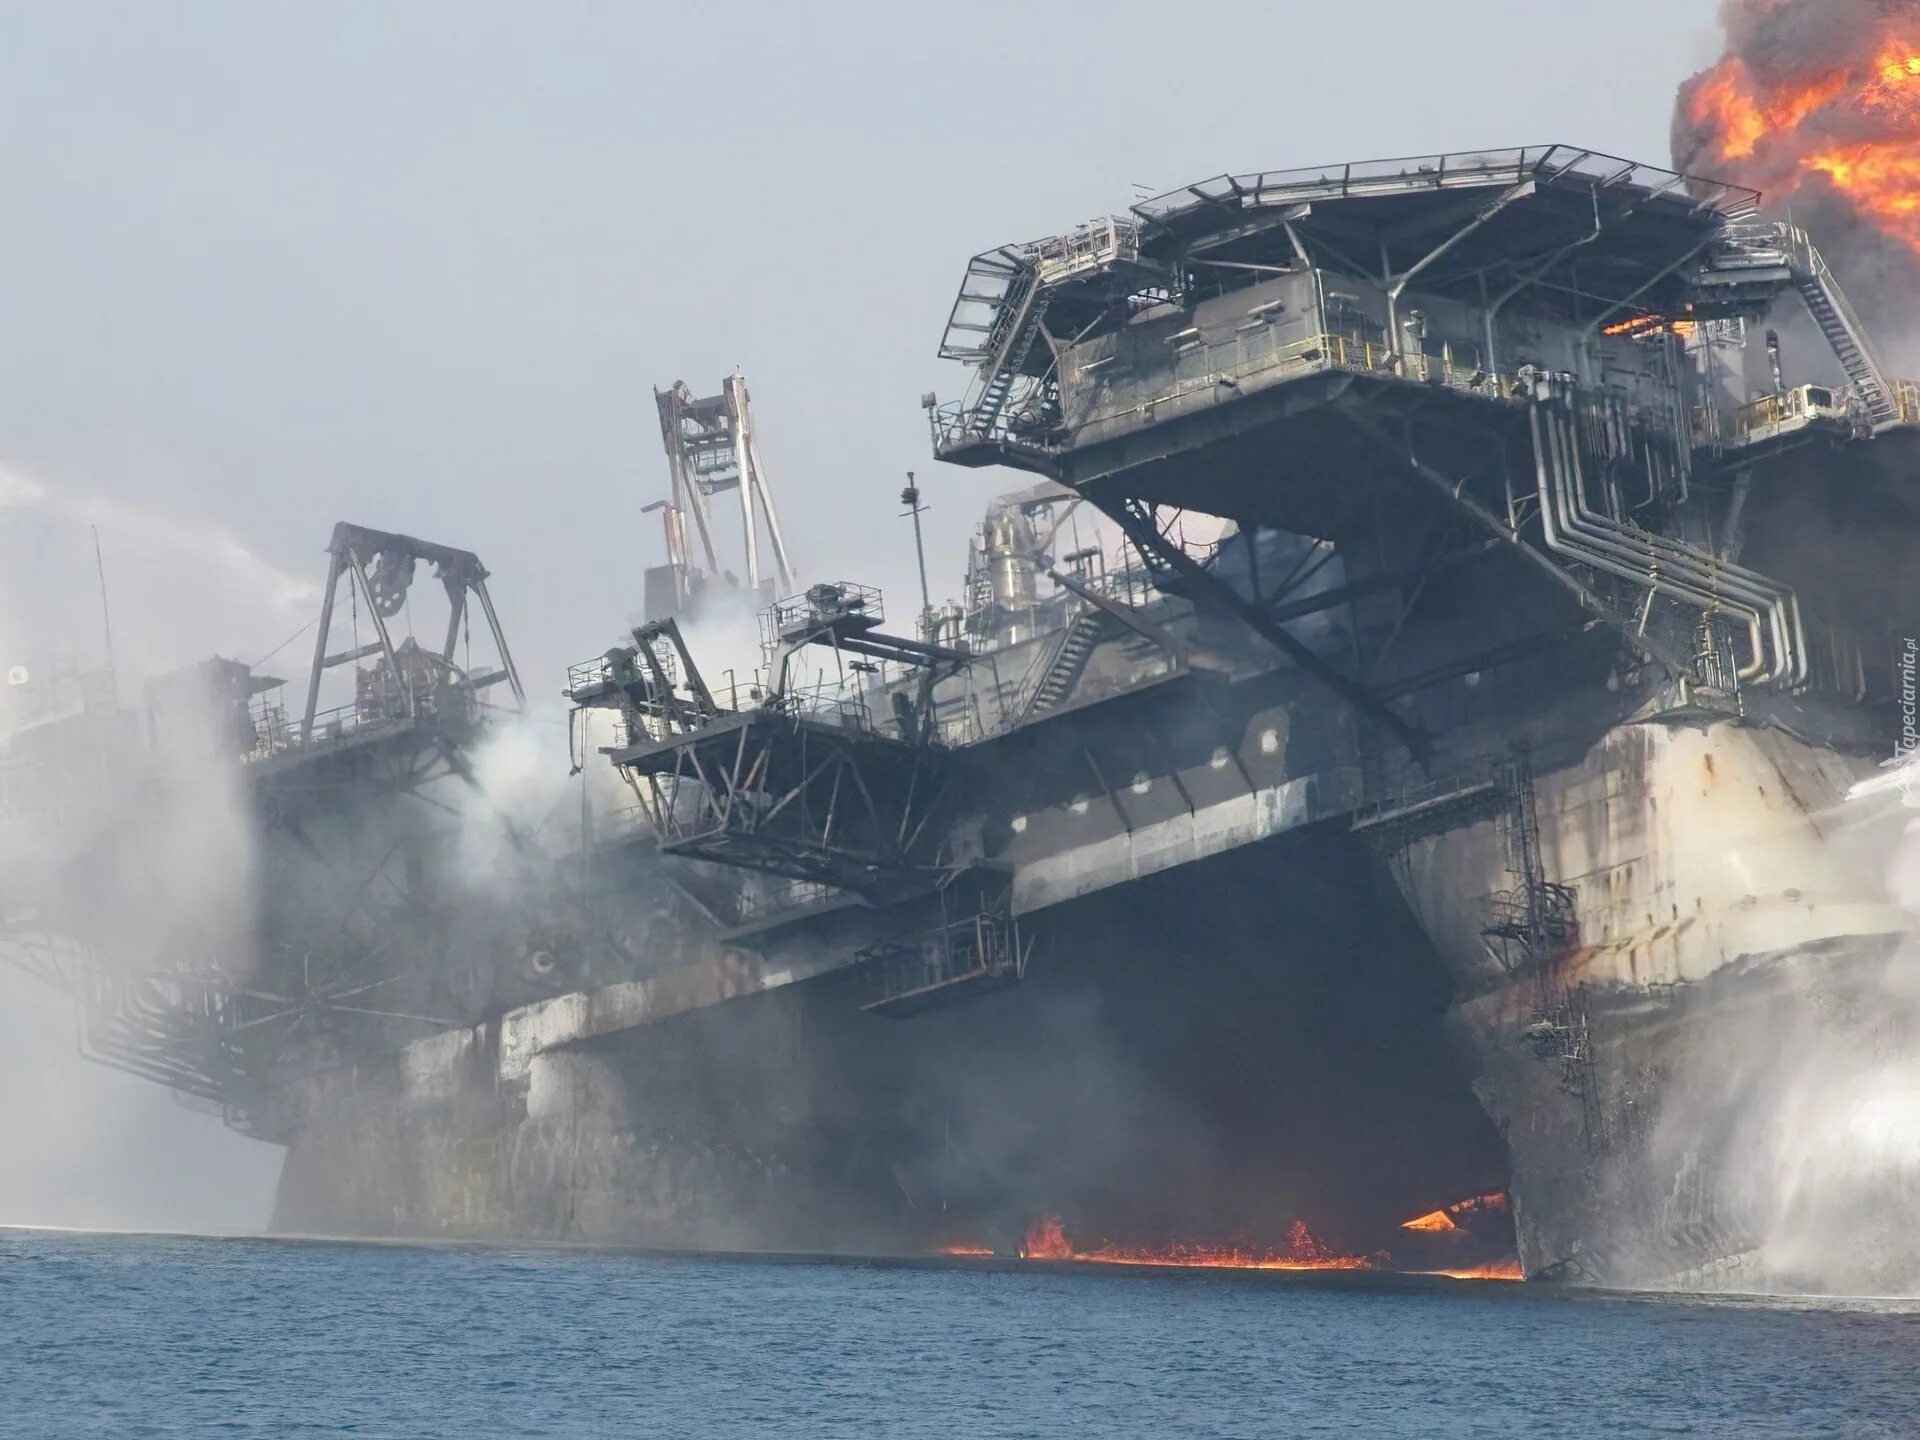 Взрыв нефтяной платформы Deepwater Horizon 2010. Авария на нефтяной платформе в мексиканском заливе 2010. Глубоководный Горизонт катастрофа 2010. Авария на нефтяной платформе Deepwater Horizon. 30 апреля 2010